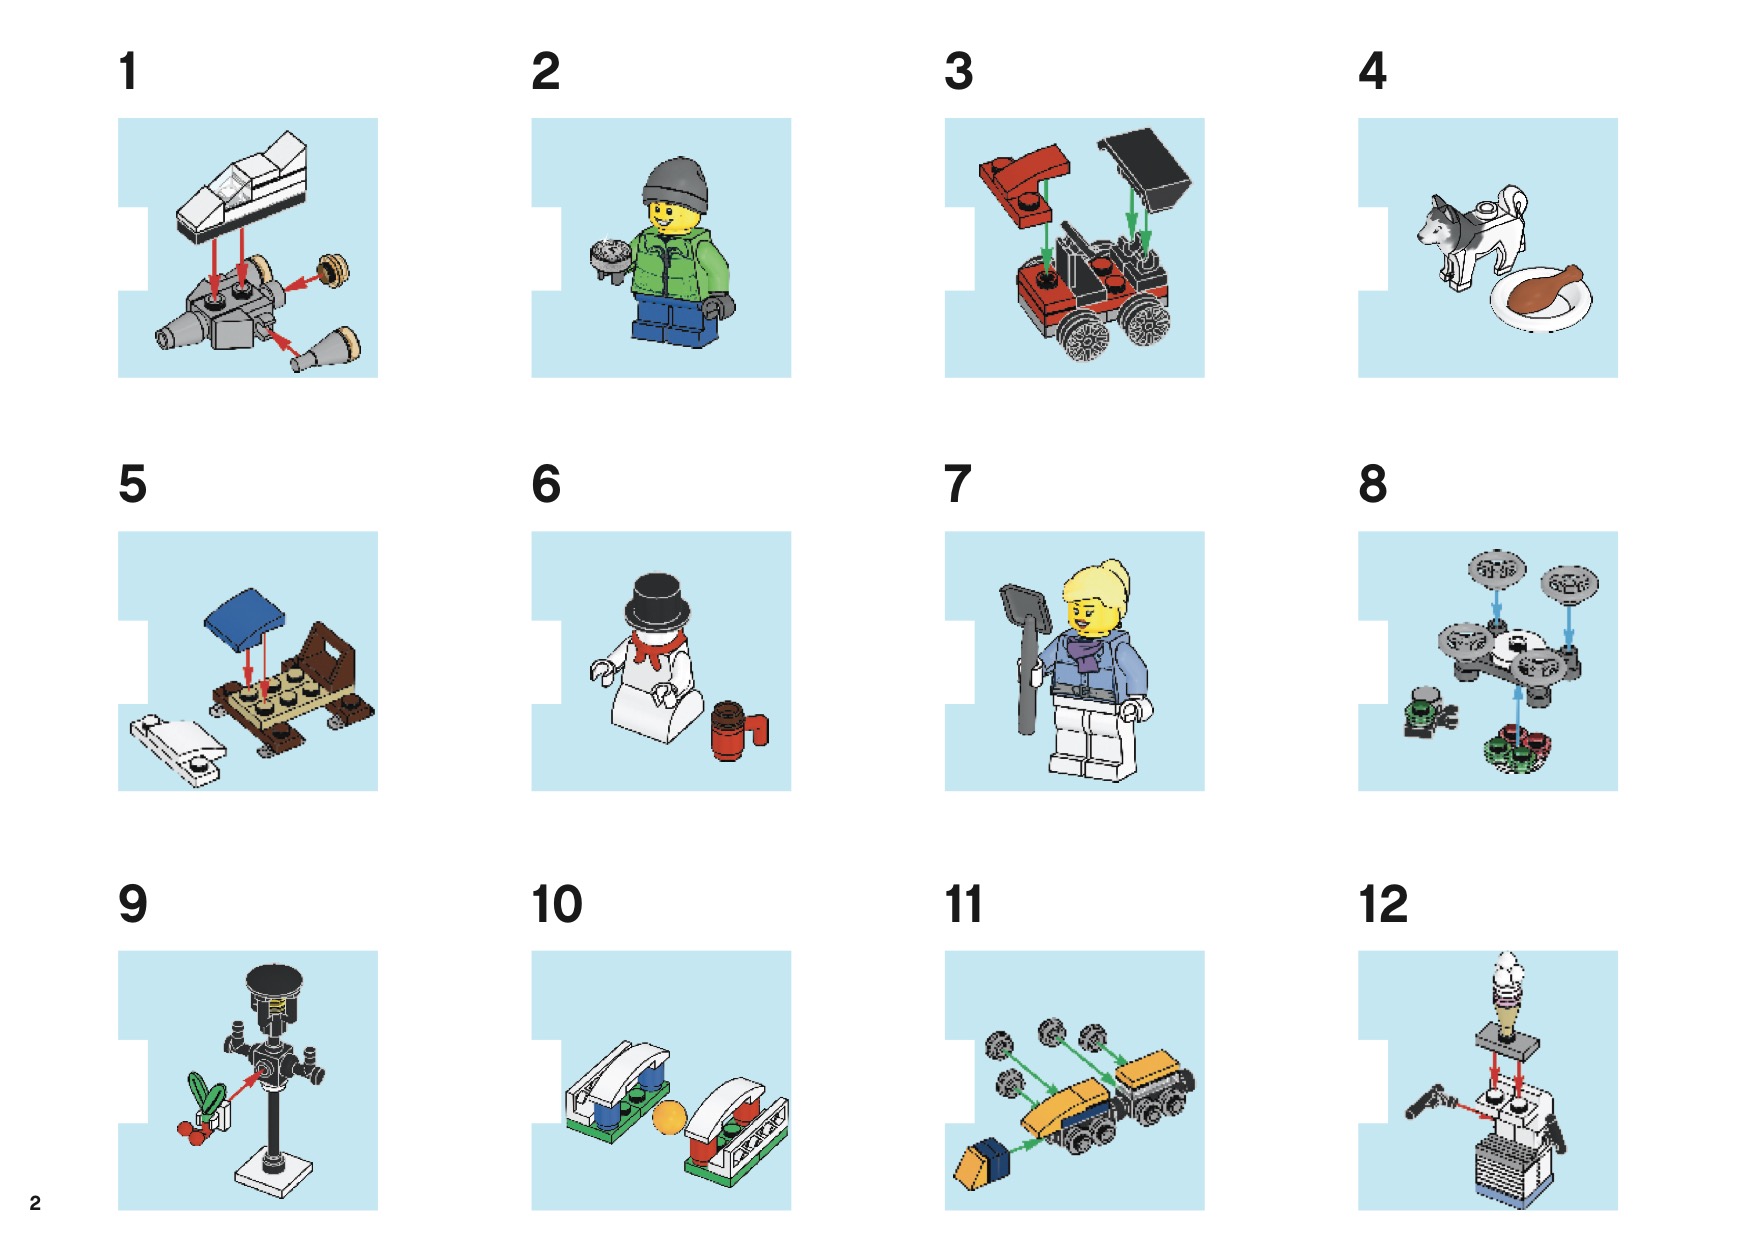 City - City Advent Calendar [Lego 60201]